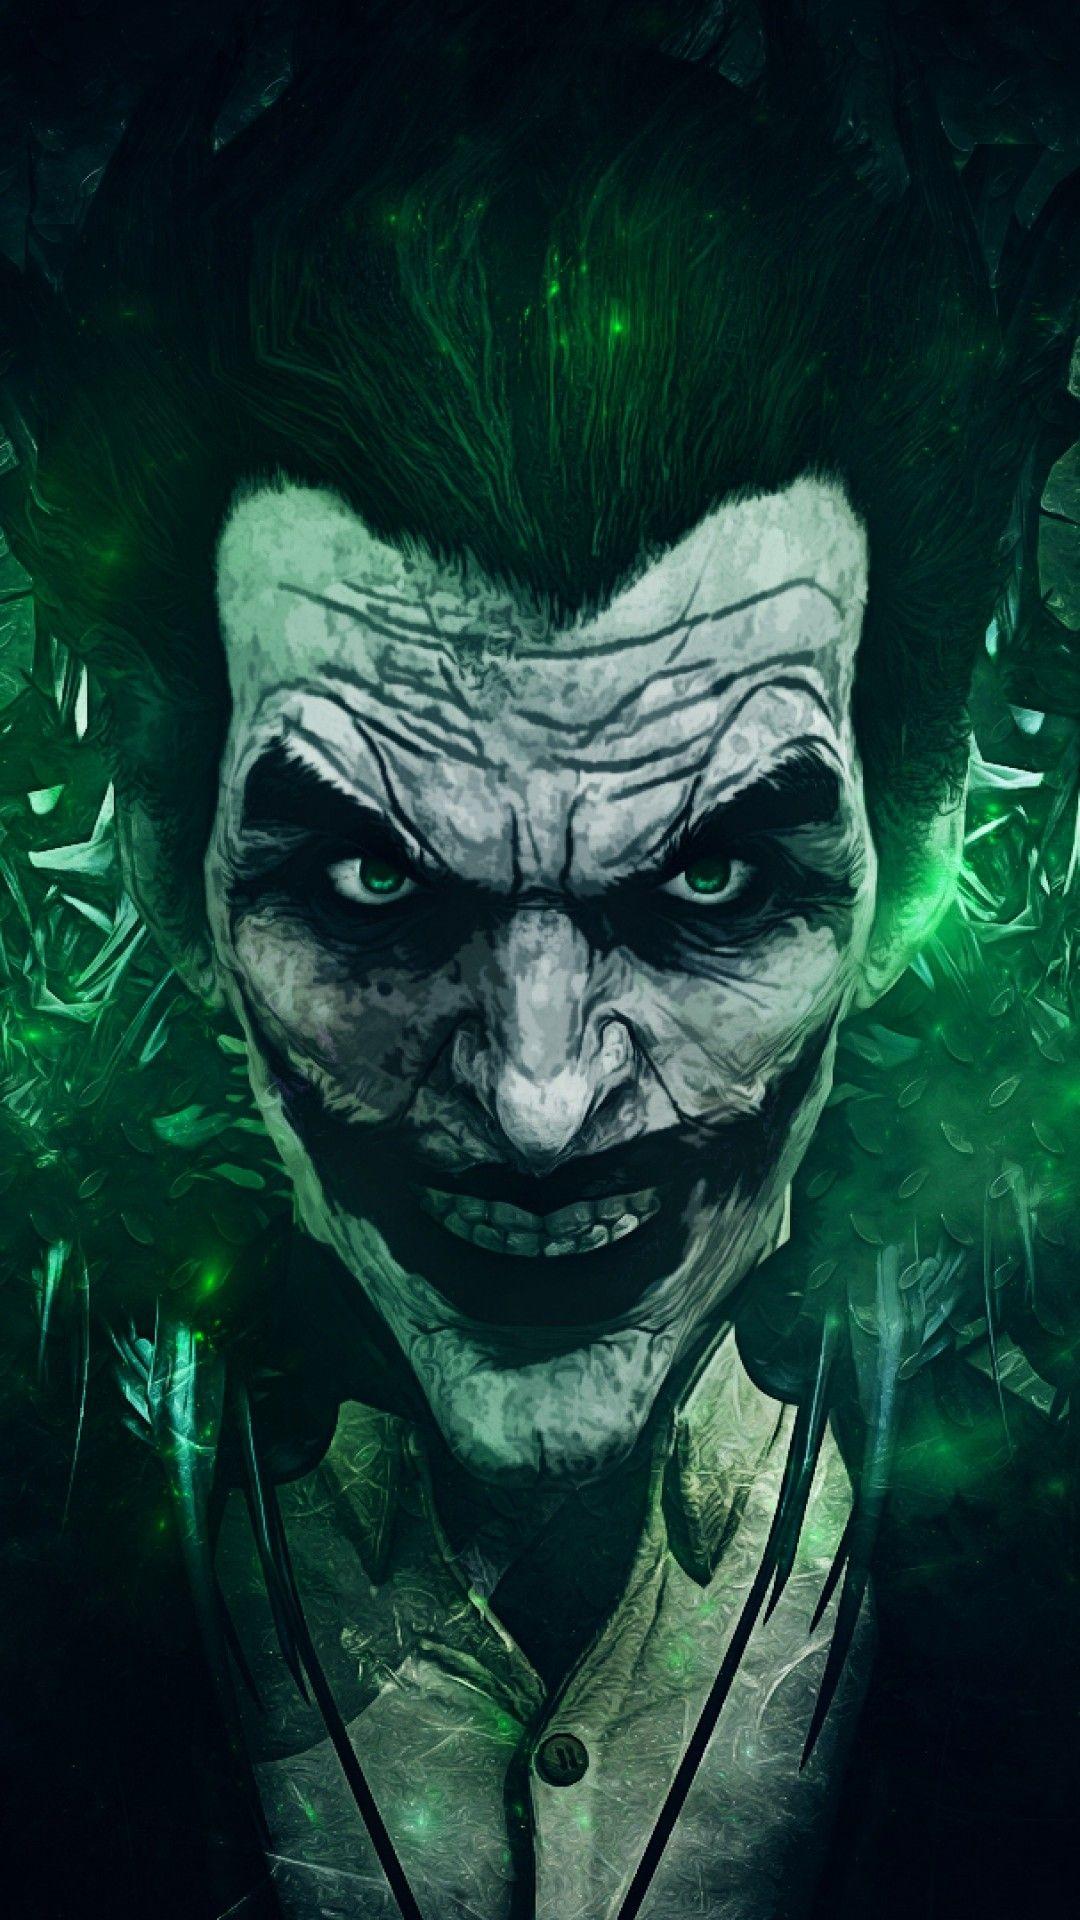 1080x1920 HD Hình Nền Joker trên iPhone